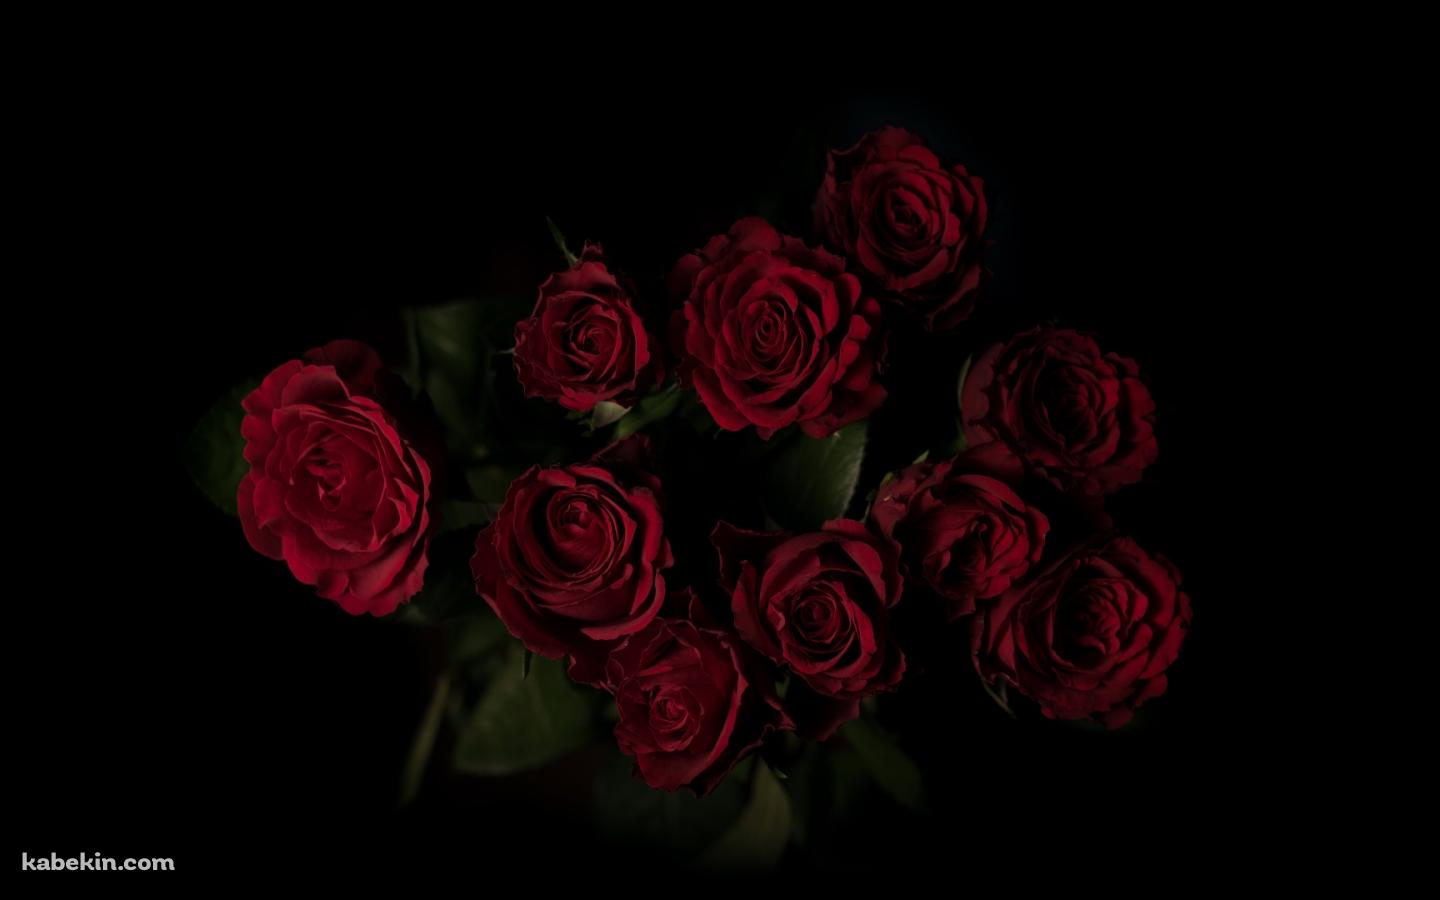 綺麗な赤い薔薇 花束の壁紙(1440px x 900px) 高画質 PC・デスクトップ用